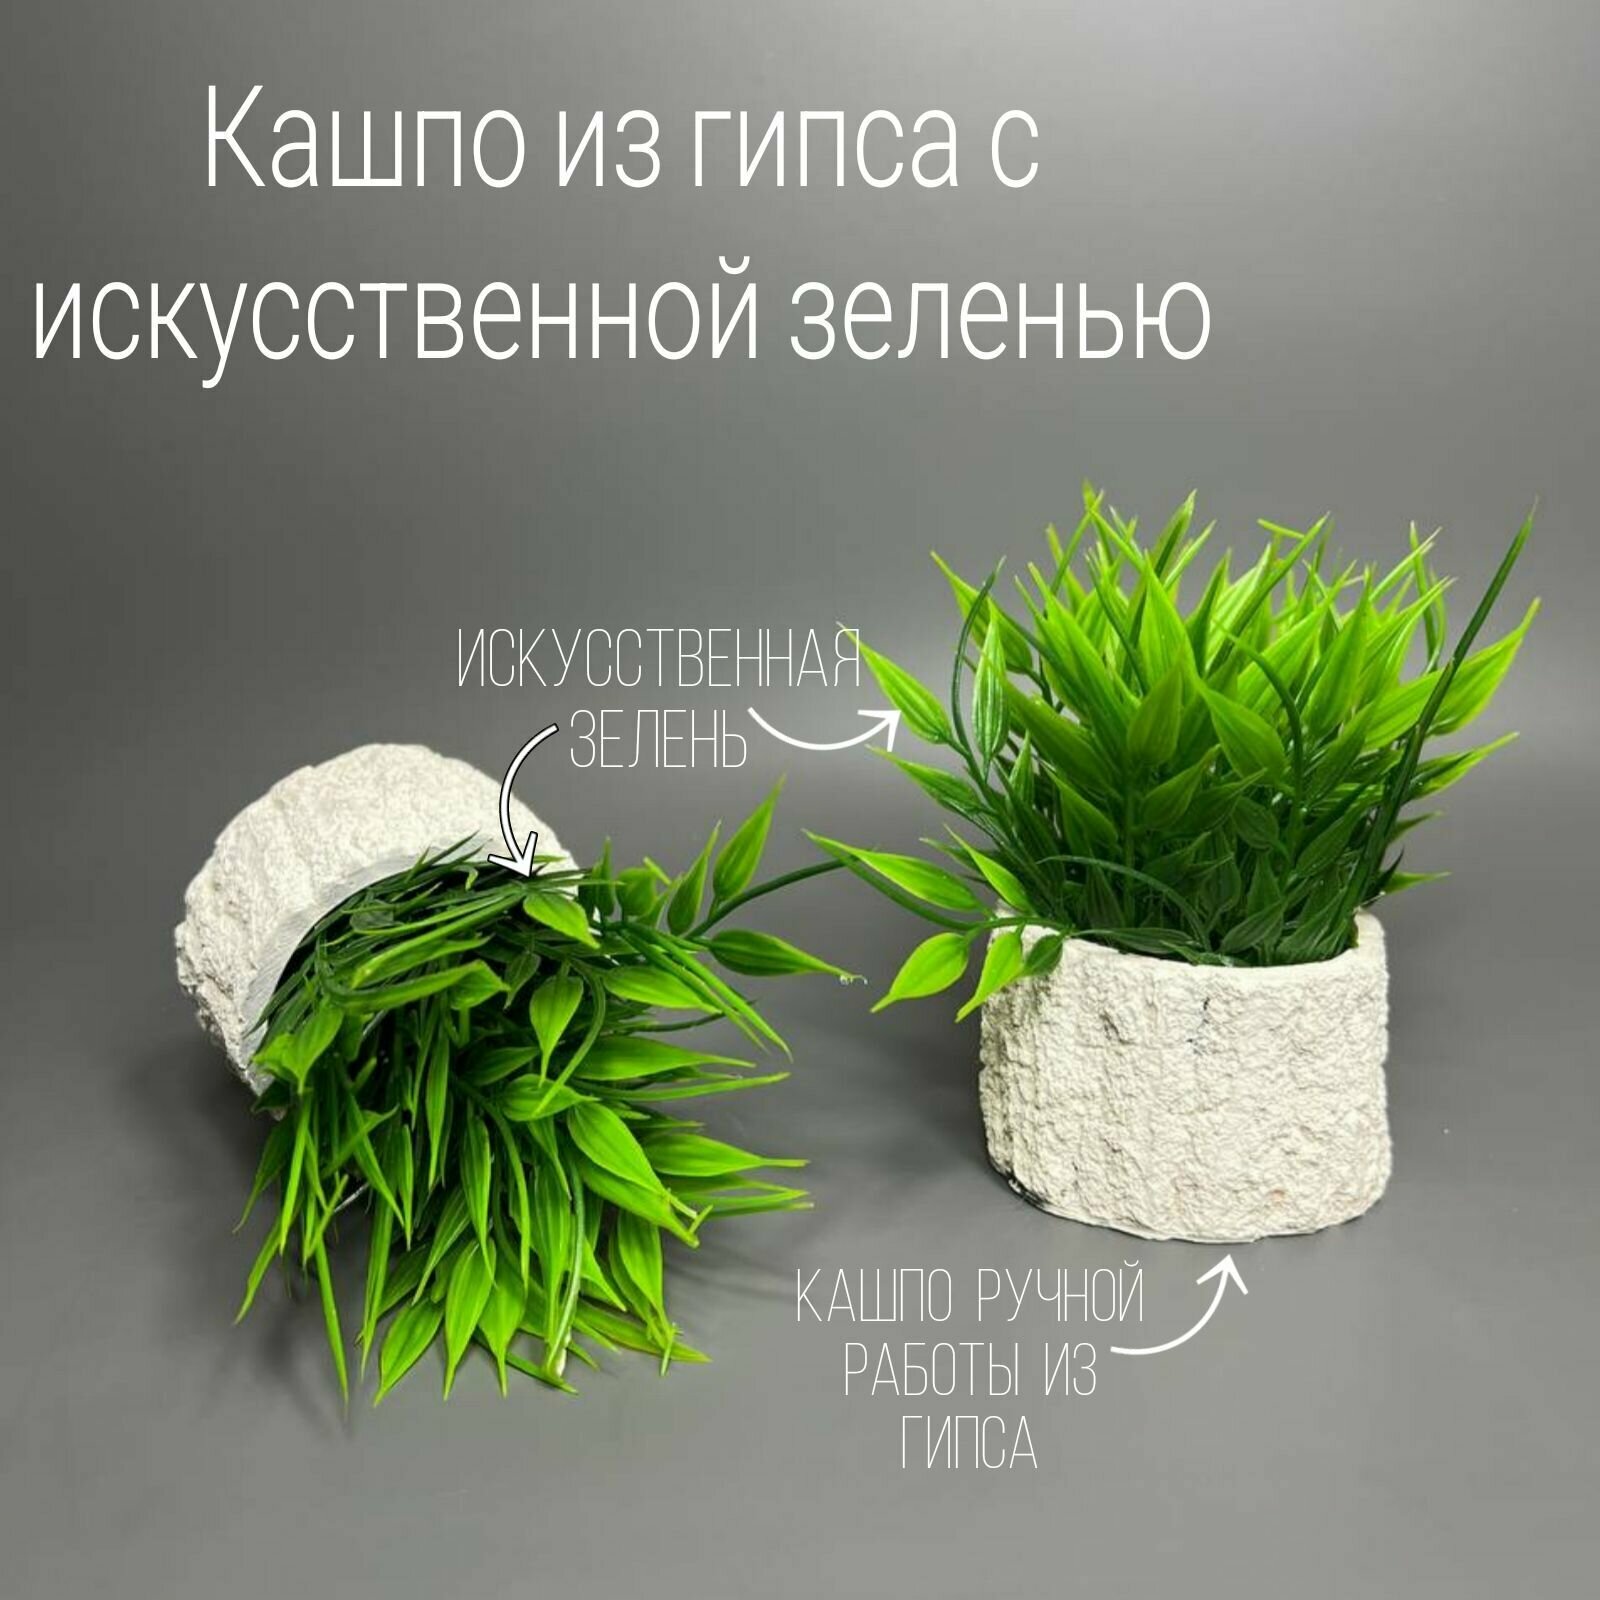 Декор для интерьера/A-lux/Декоративный набор из гипса с искусственной зеленью/Ручная работа